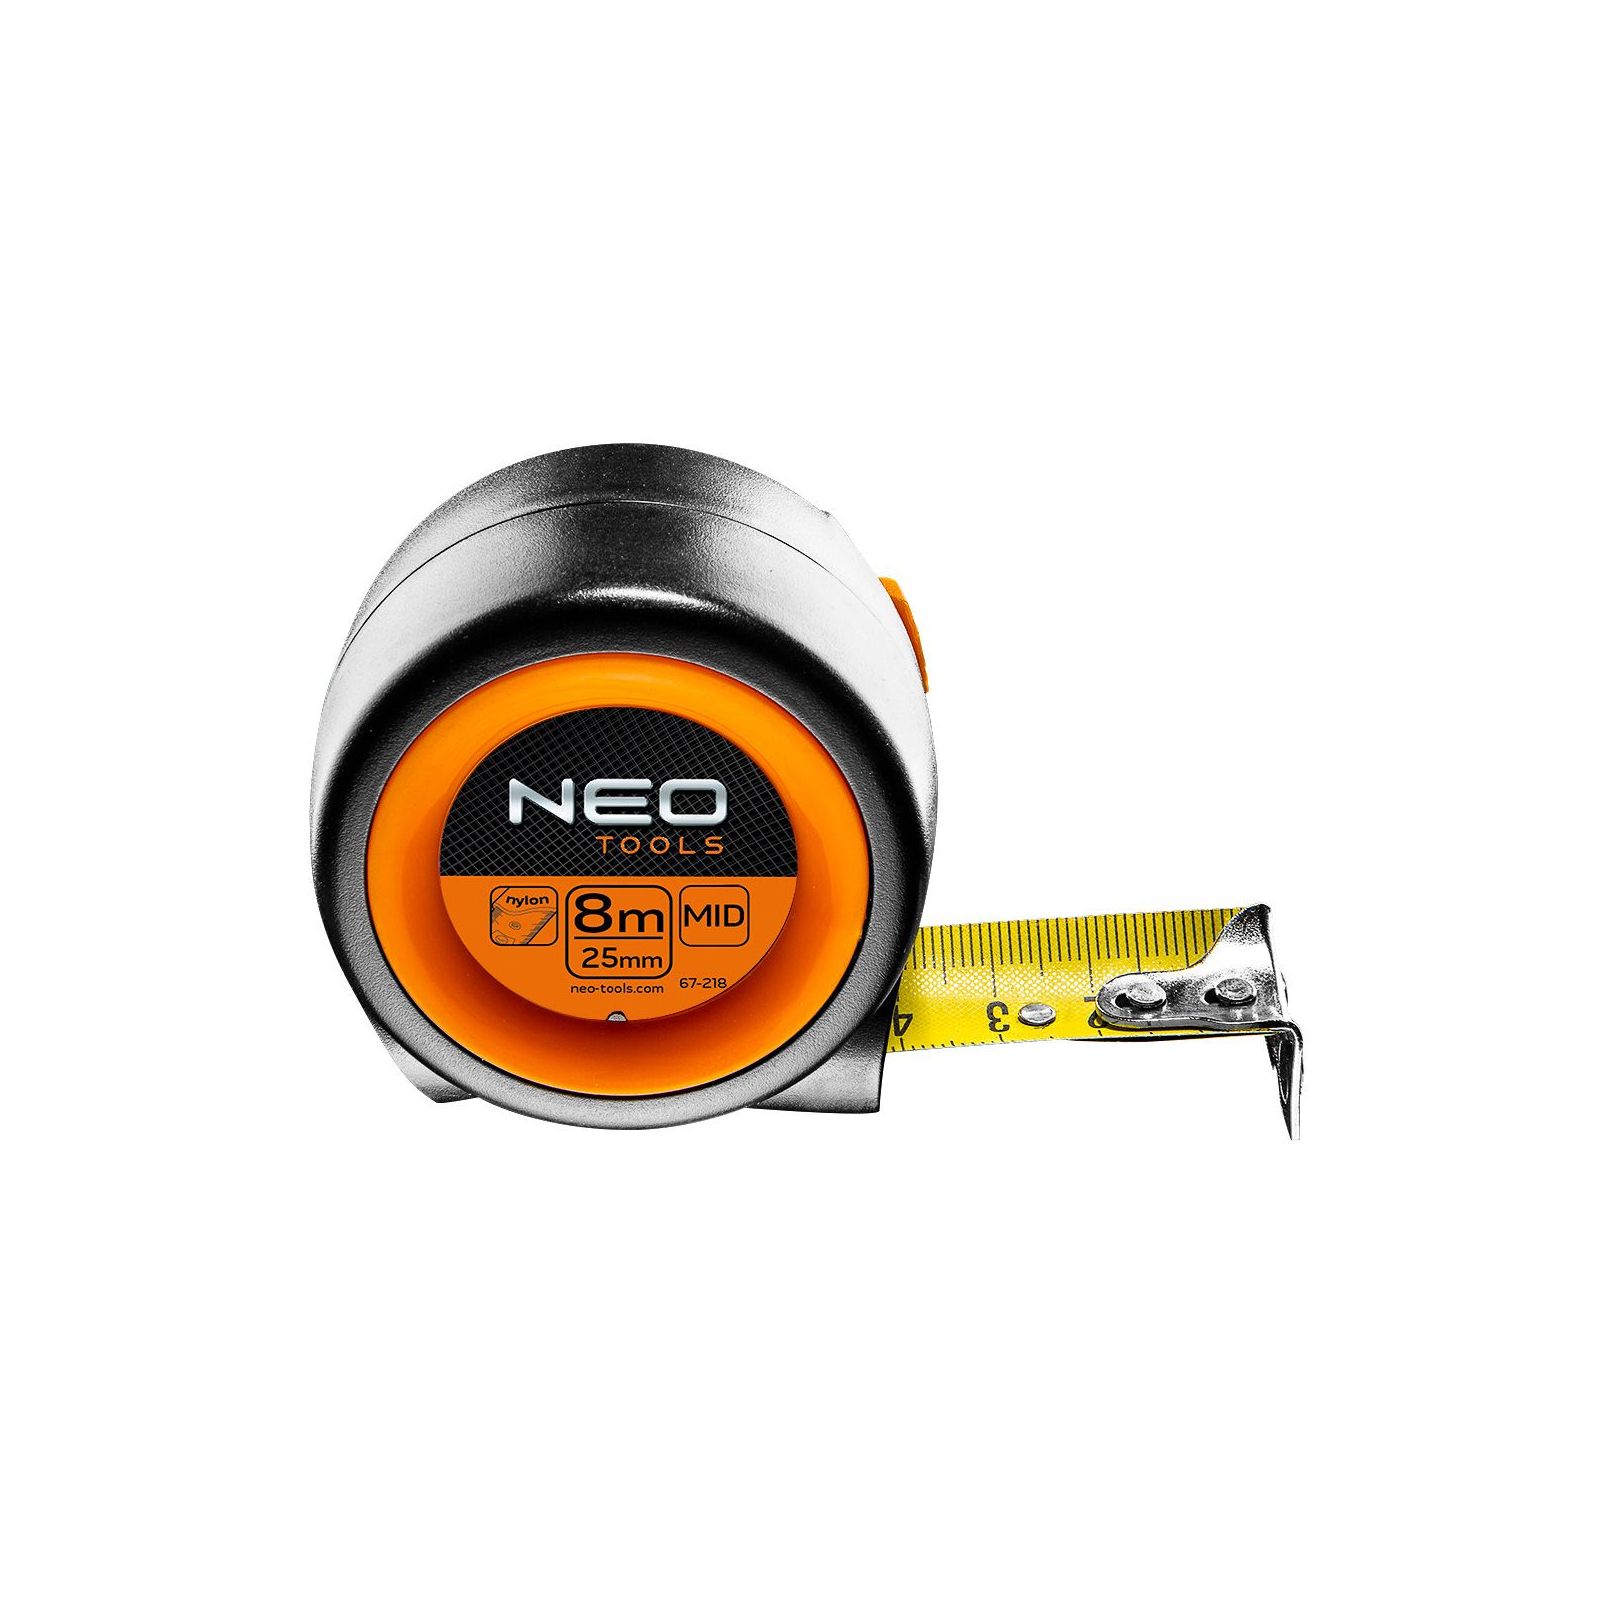 Рулетка Neo Tools компактна, сталева стрічка, 8 м x 25 мм, з фіксатором selflo (67-218)